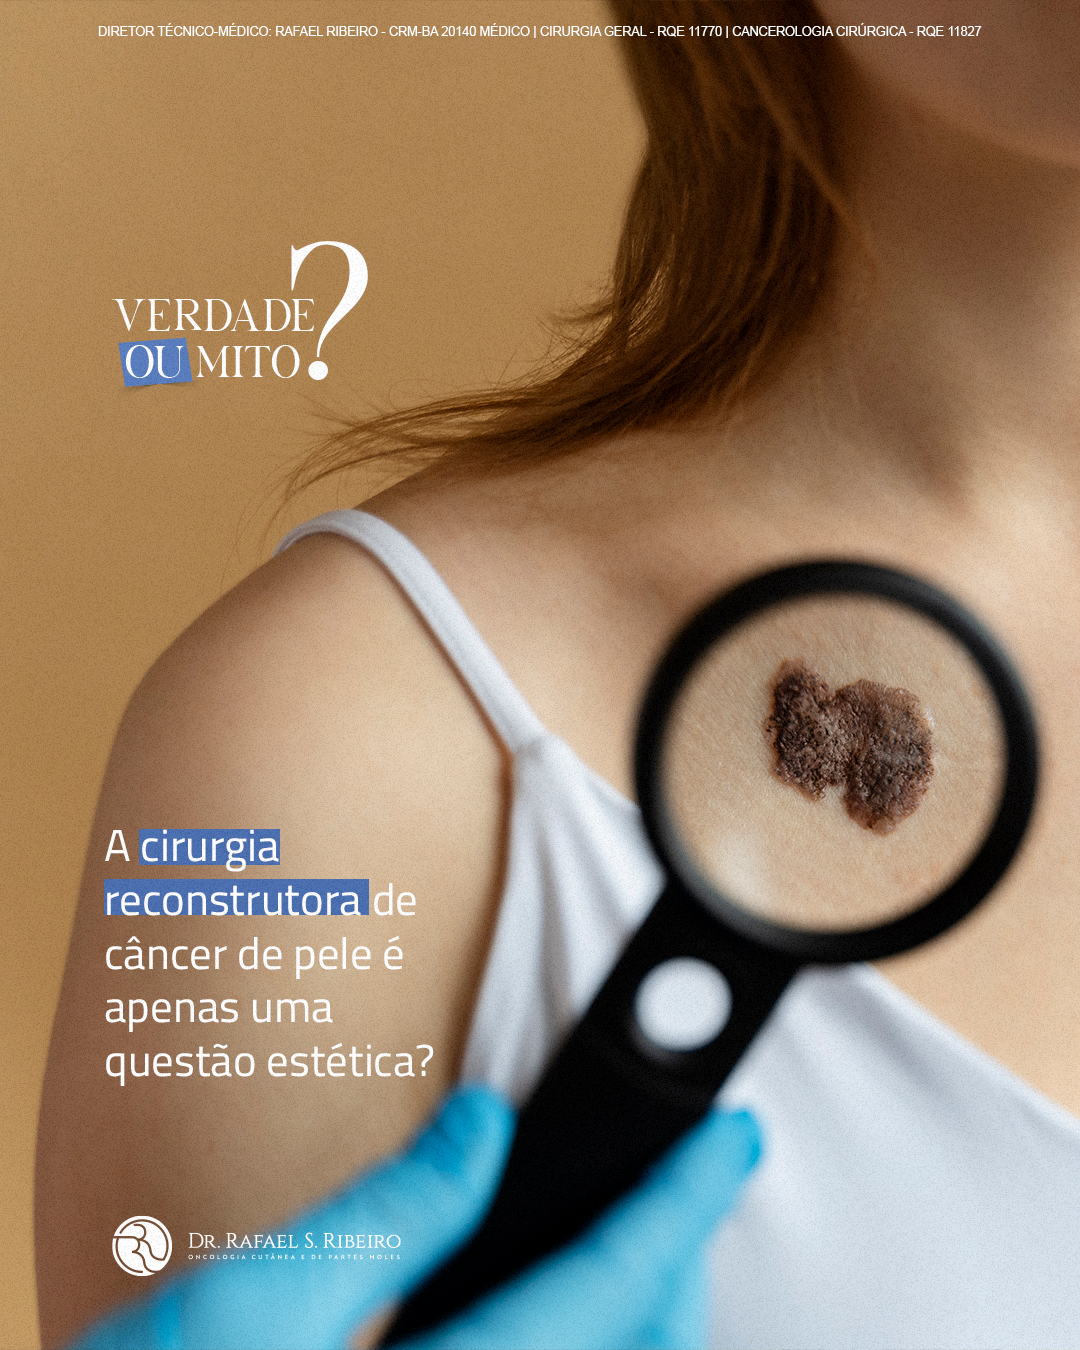 A cirurgia reconstrutora de câncer de pele é apenas uma questão estética?